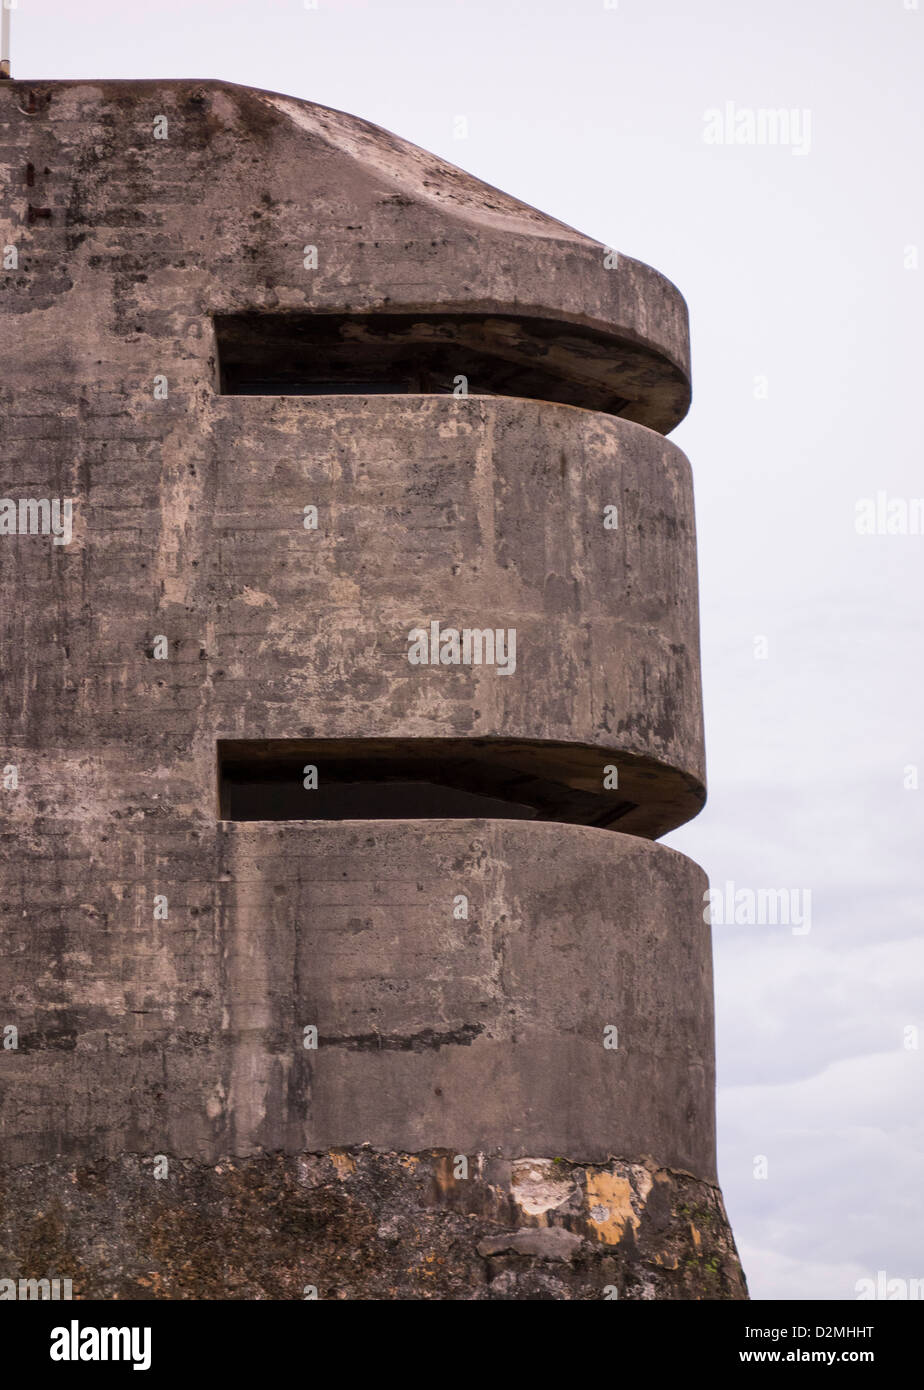 La vecchia San Juan, Puerto Rico - II Guerra Mondiale della torretta di osservazione al Castillo San Cristobal fort. Foto Stock